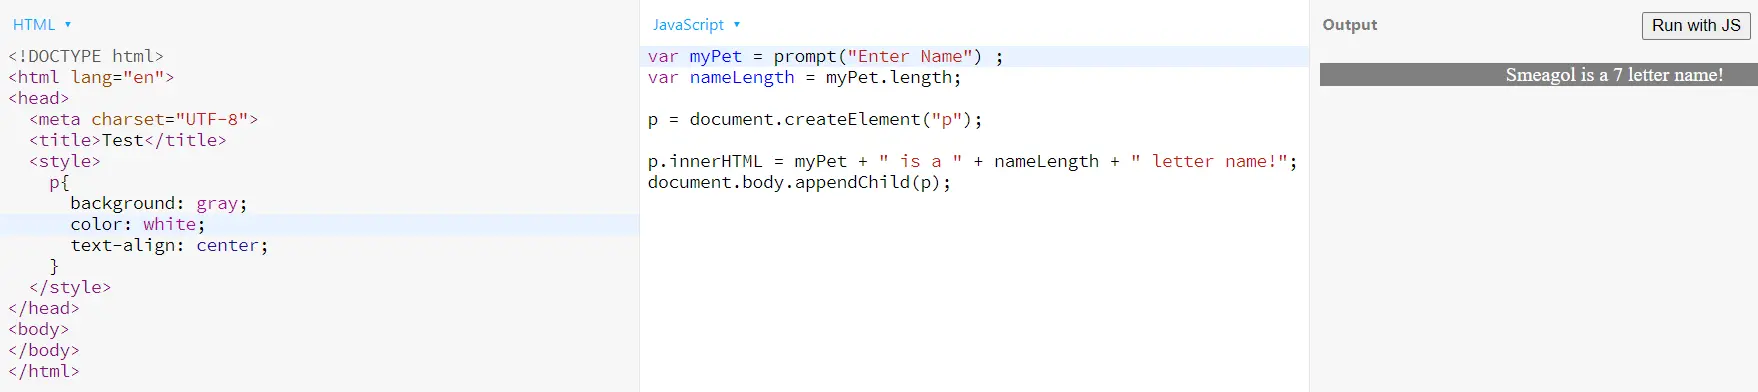 html2 で渡すタグ要素を作成します